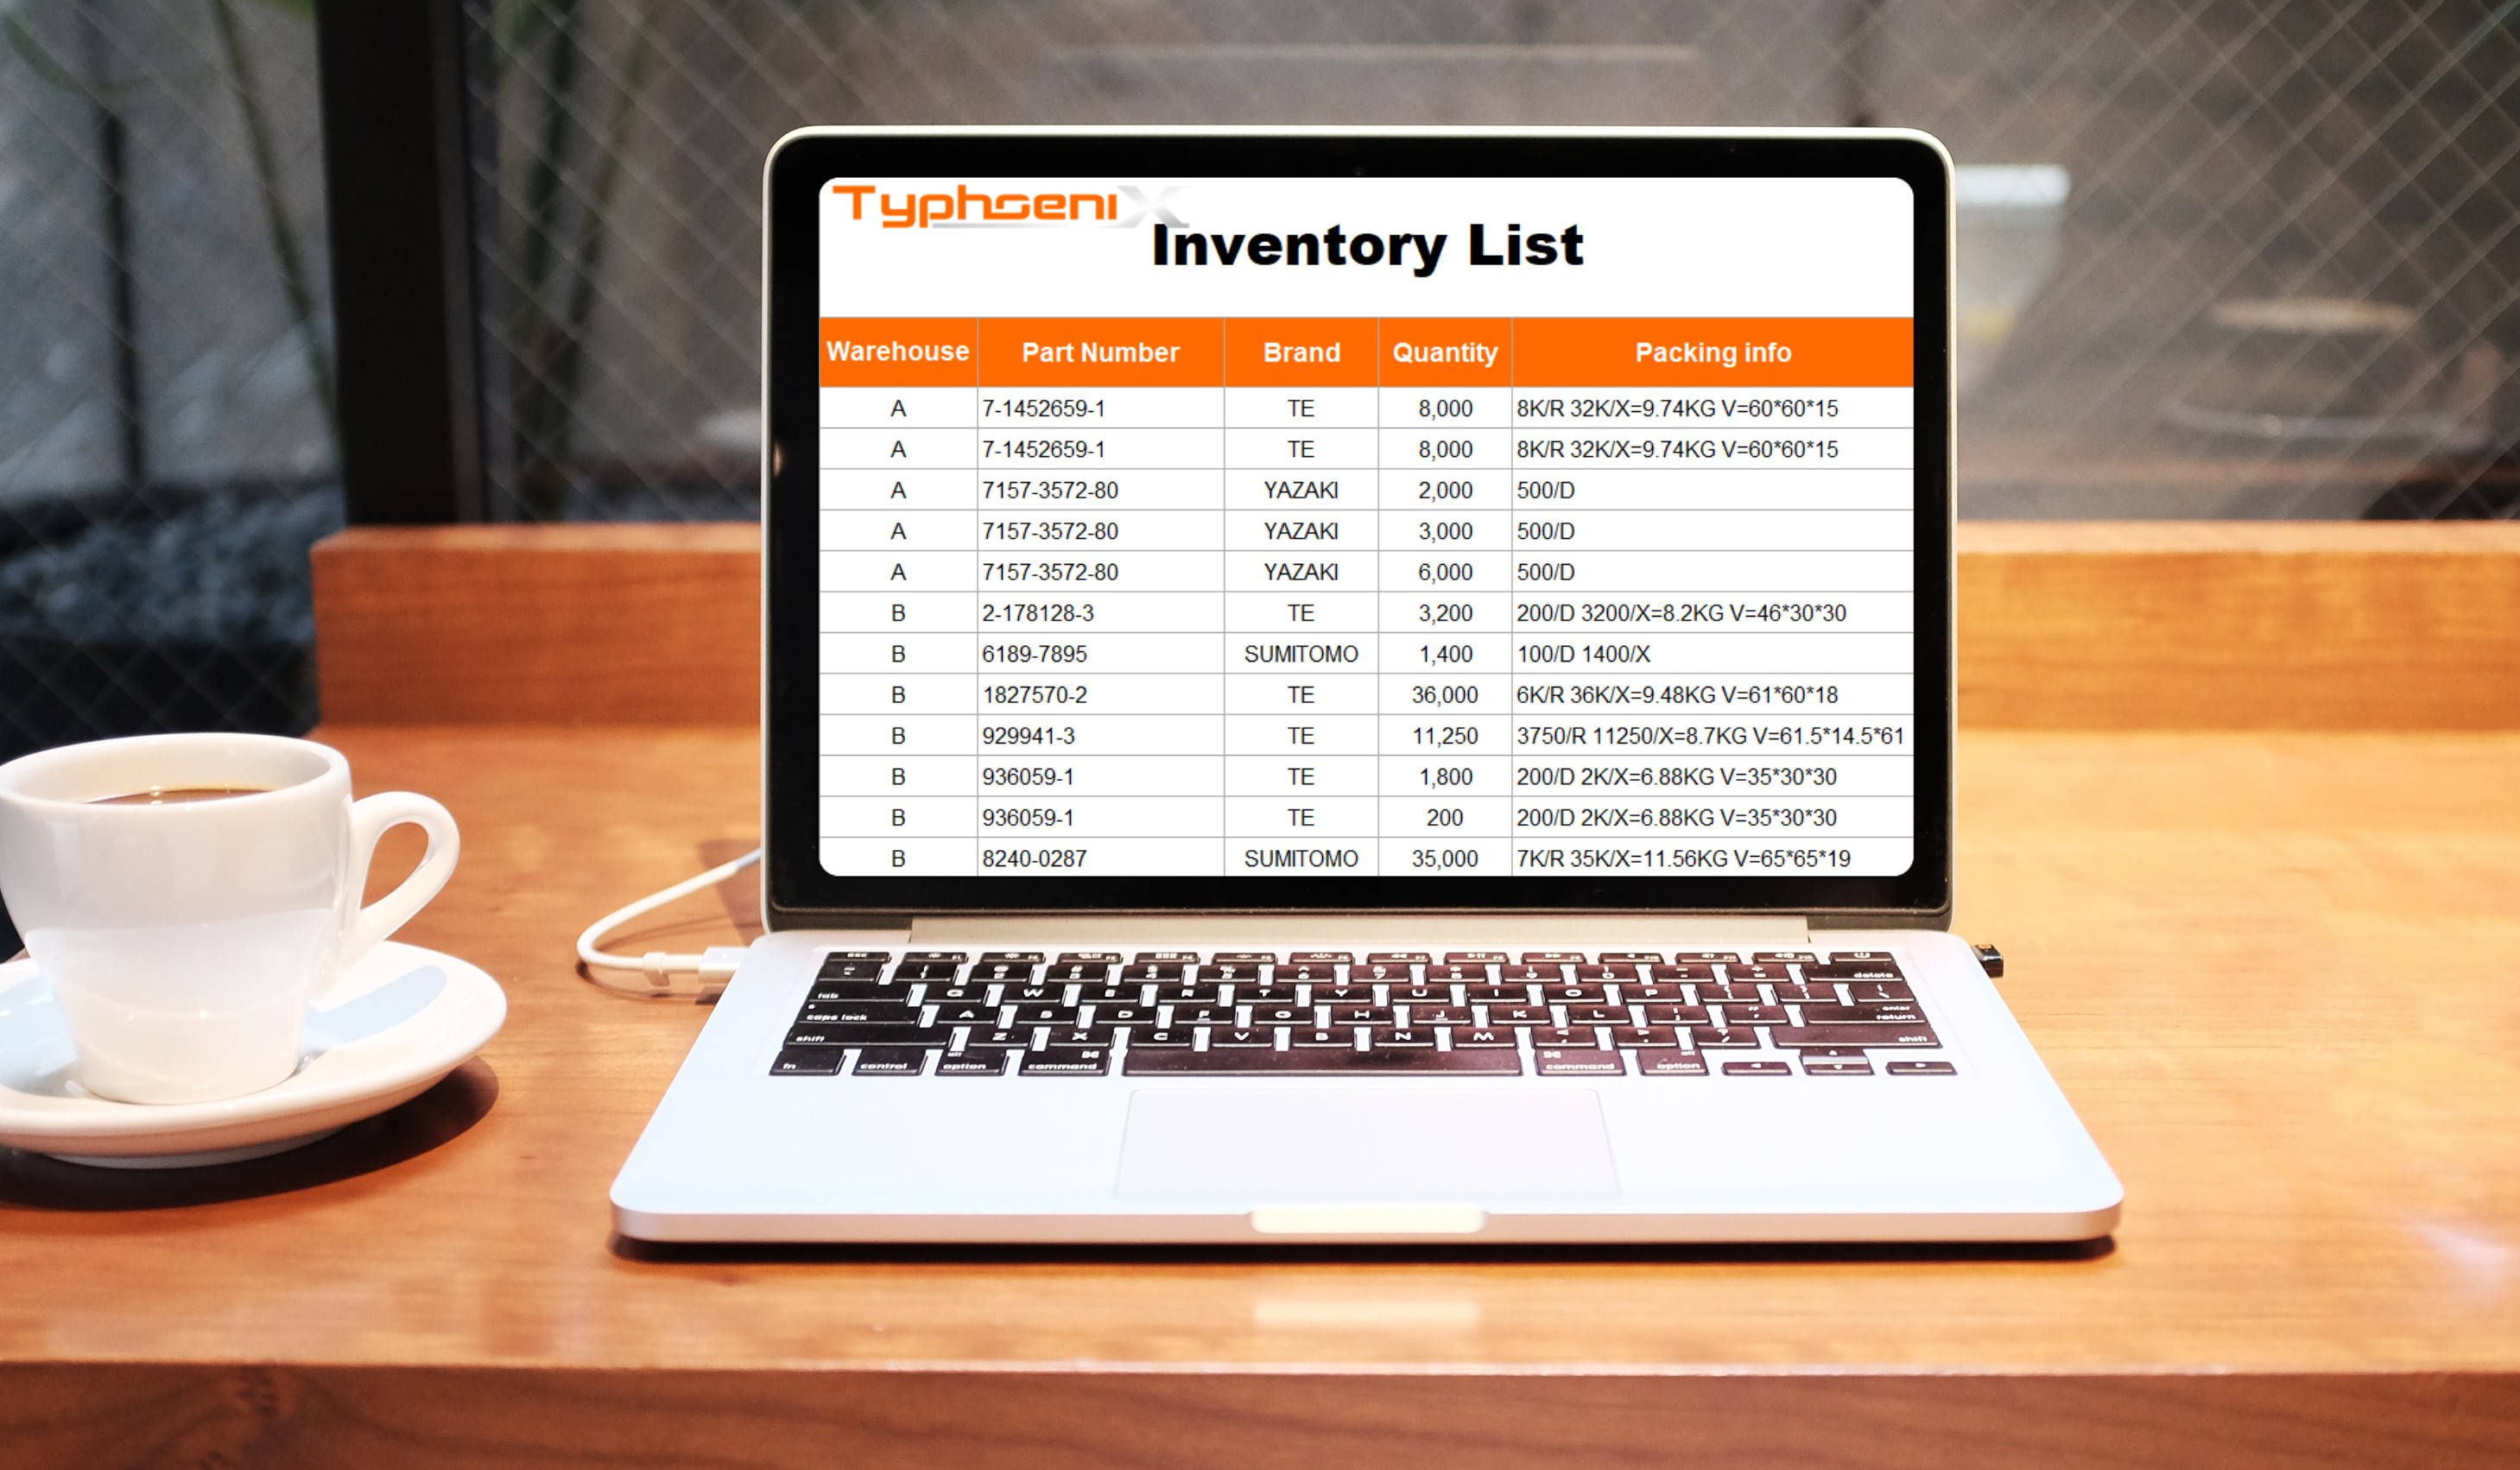 Typhoenix inventory list